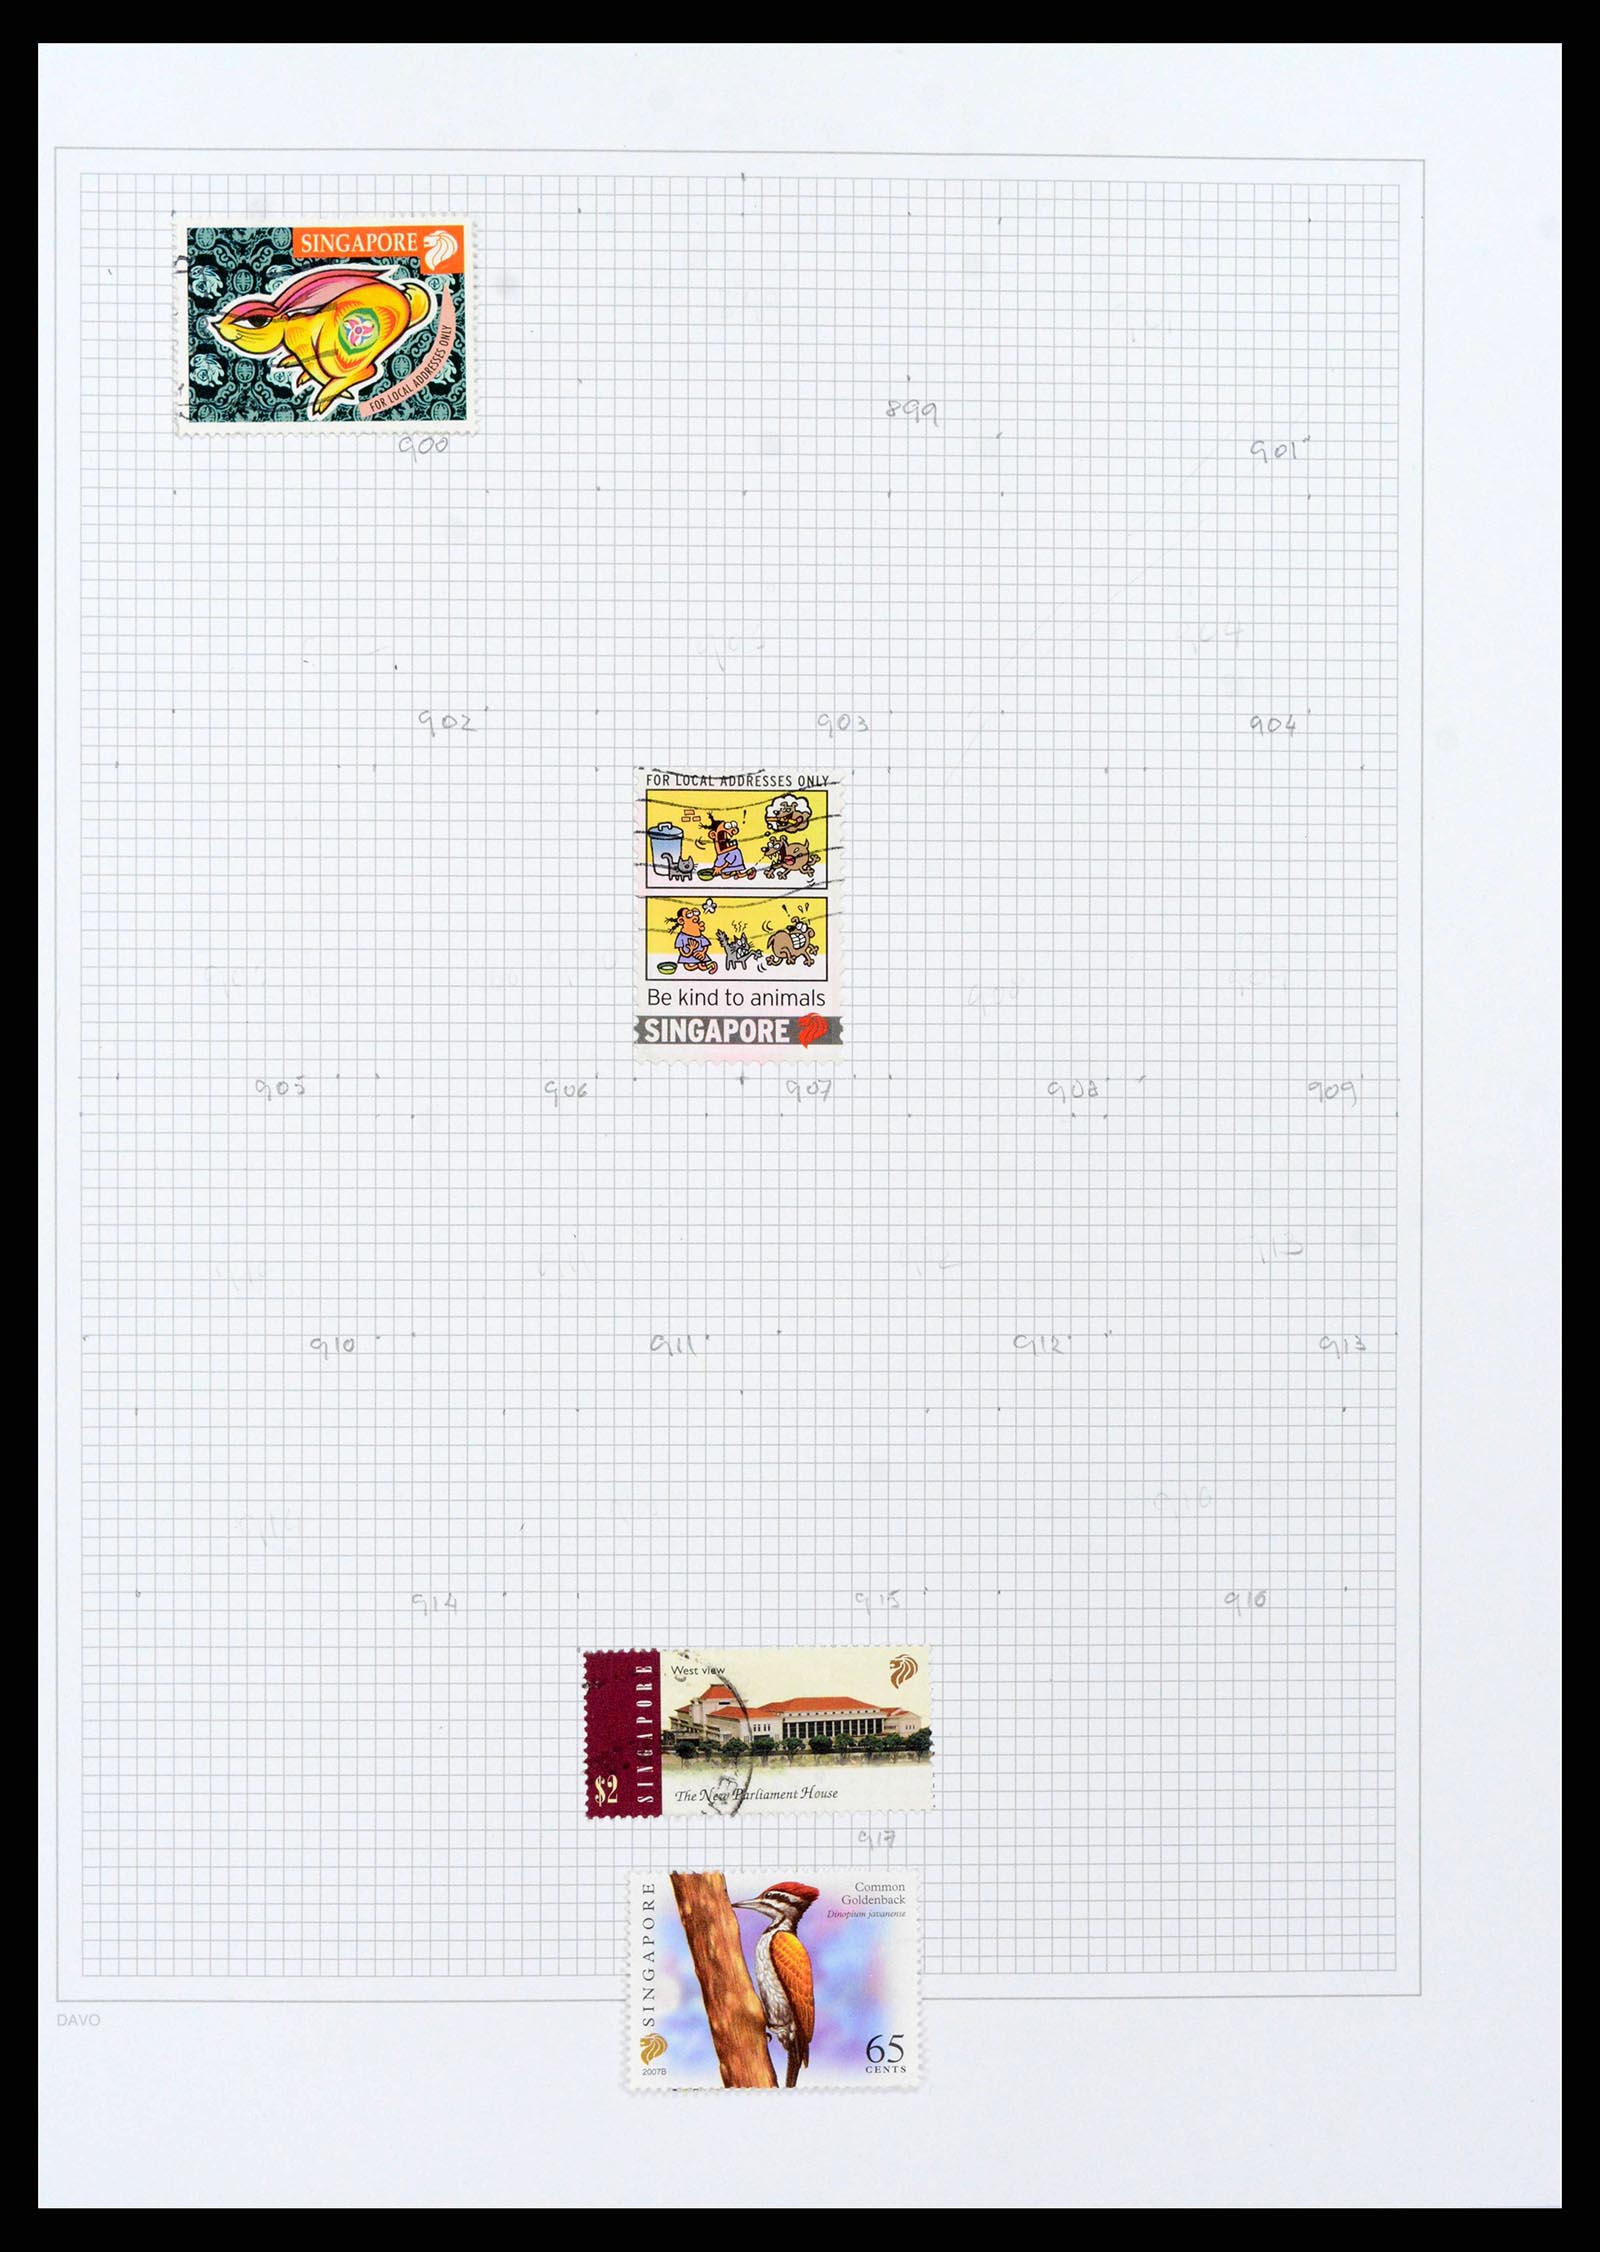 38158 0077 - Stamp collection 38158 Hong Kong 1862-1997.